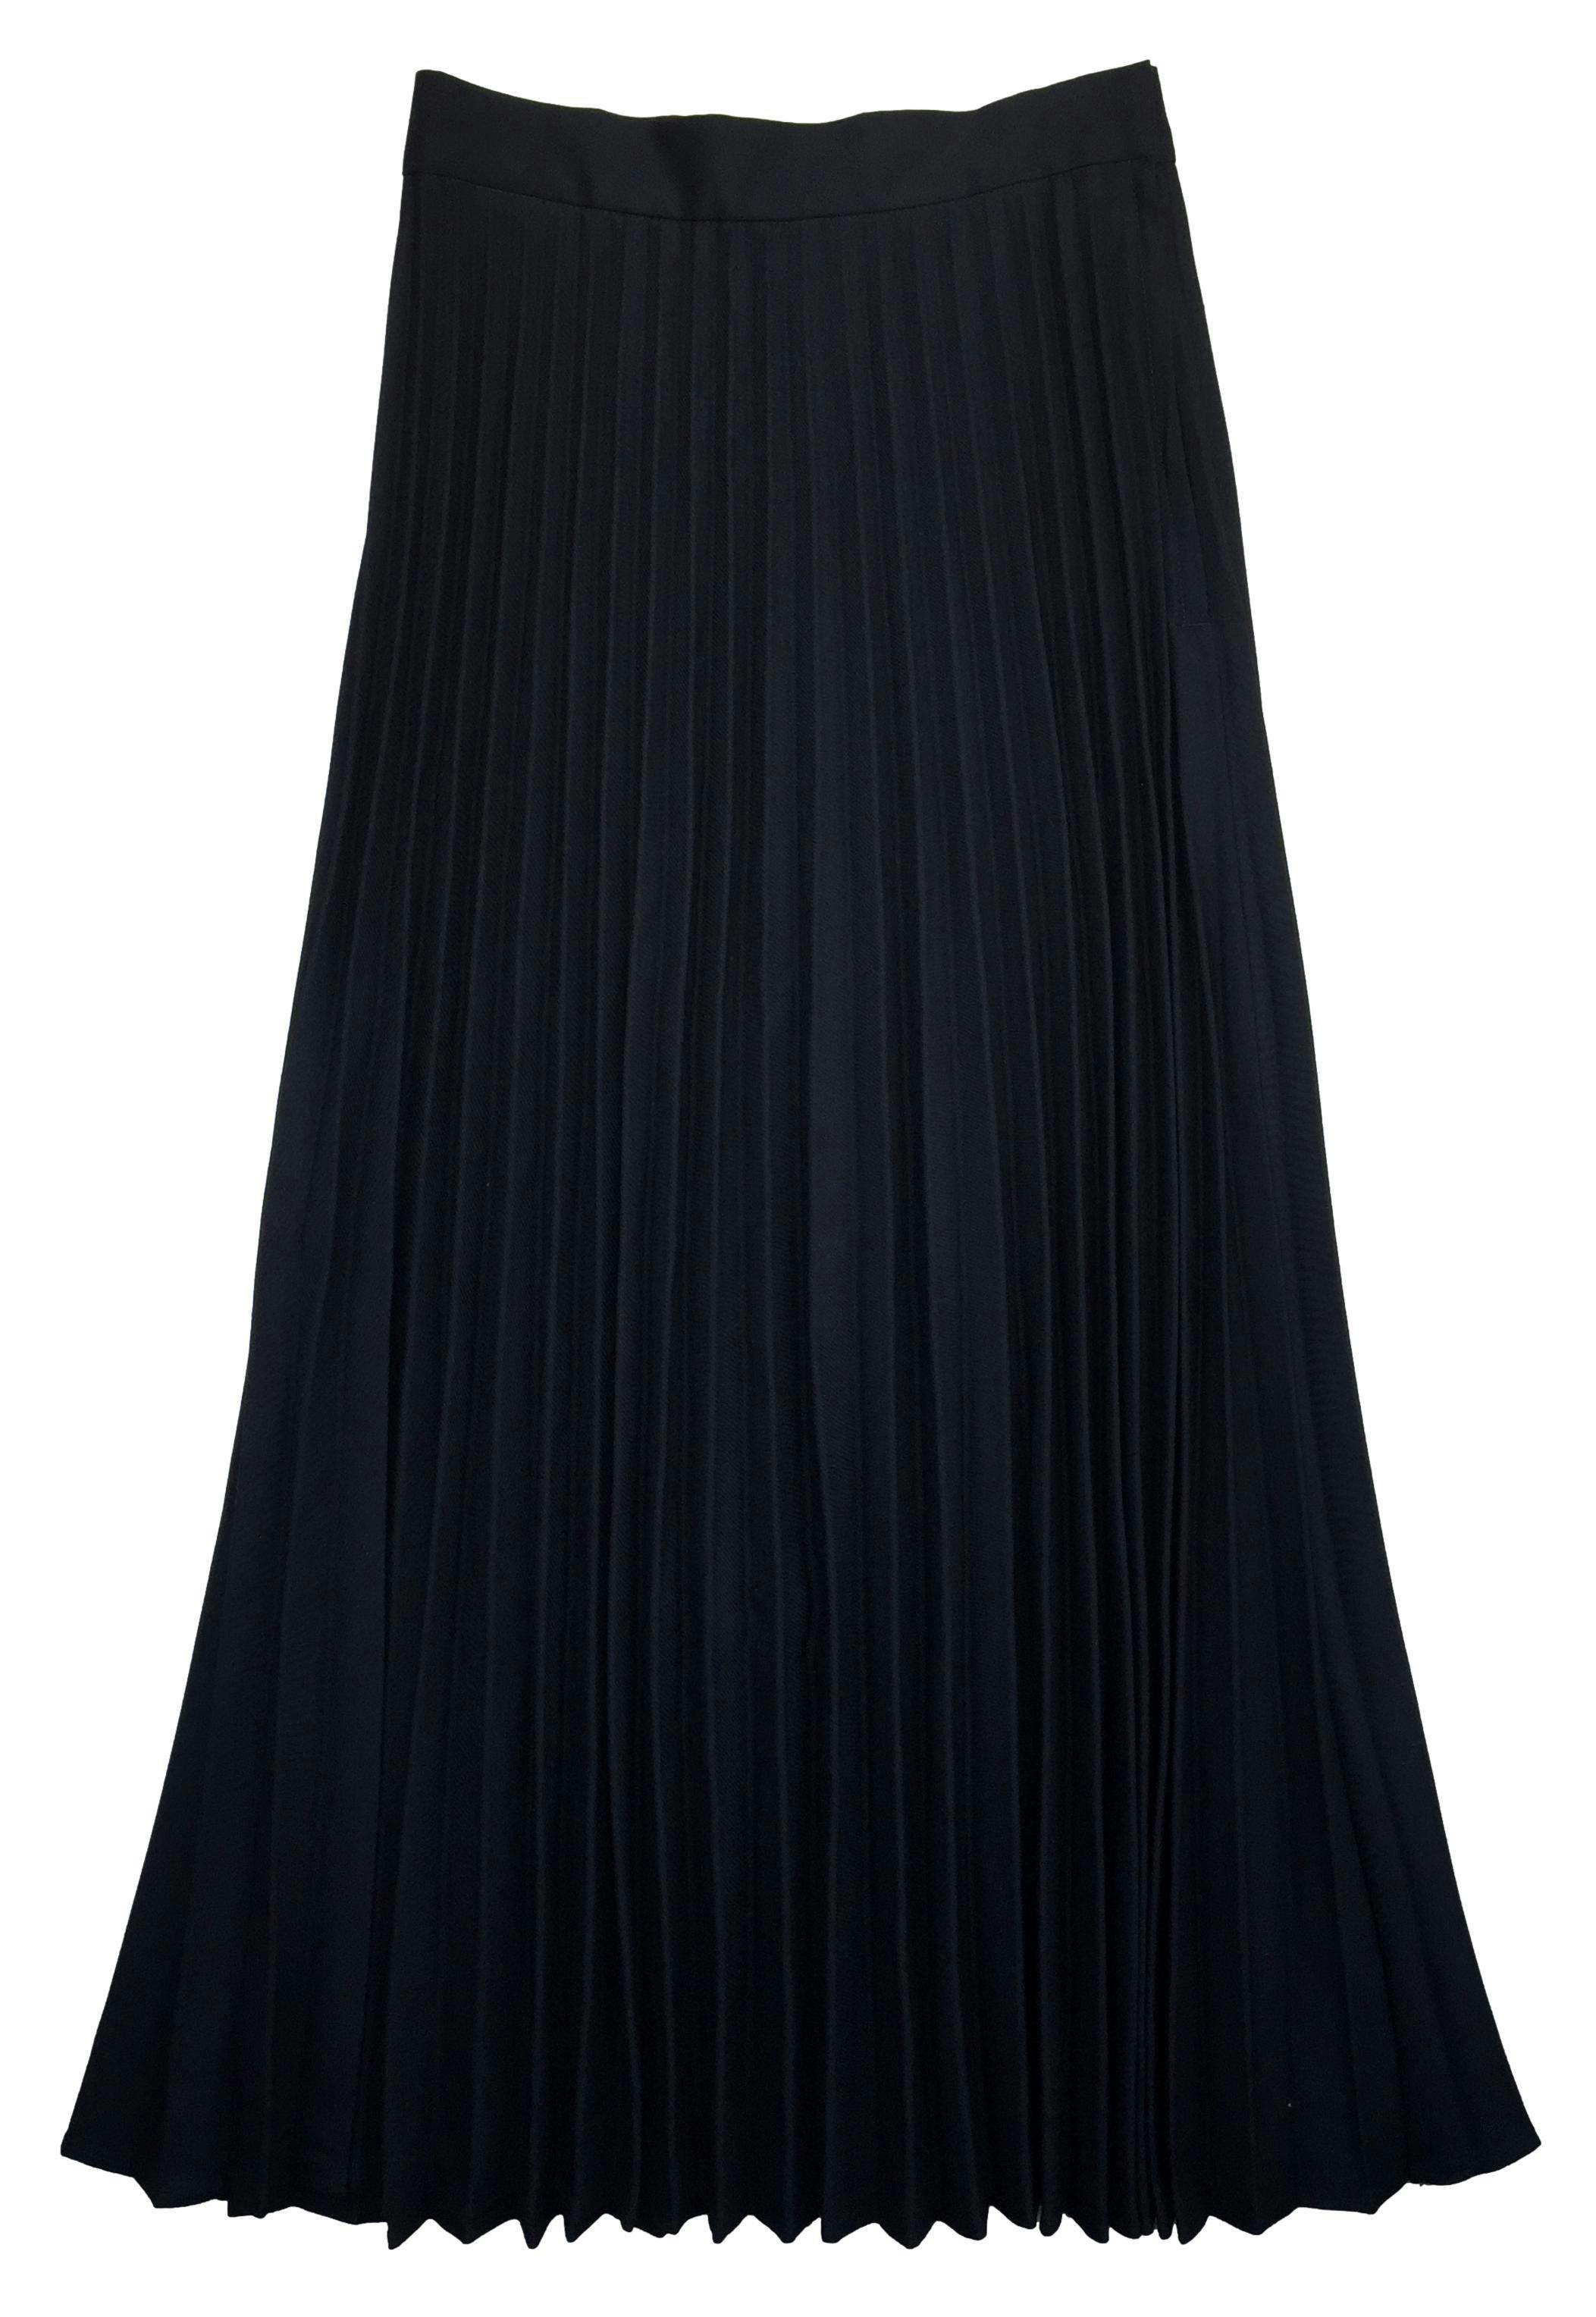 Falda H&M negra plisada con cierre y botón lateral. Cintura 65cm Largo 92cm. Nuevo con etiqueta